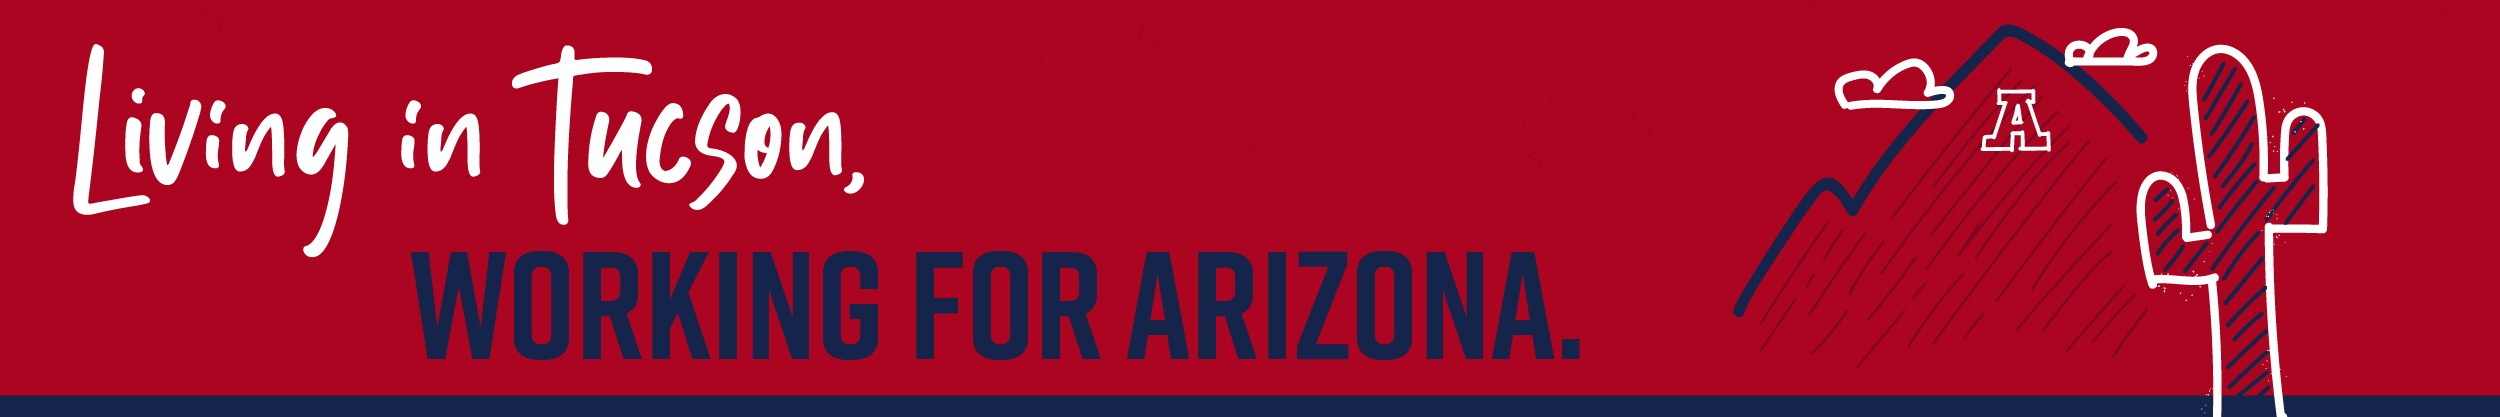 Living in Tucson banner